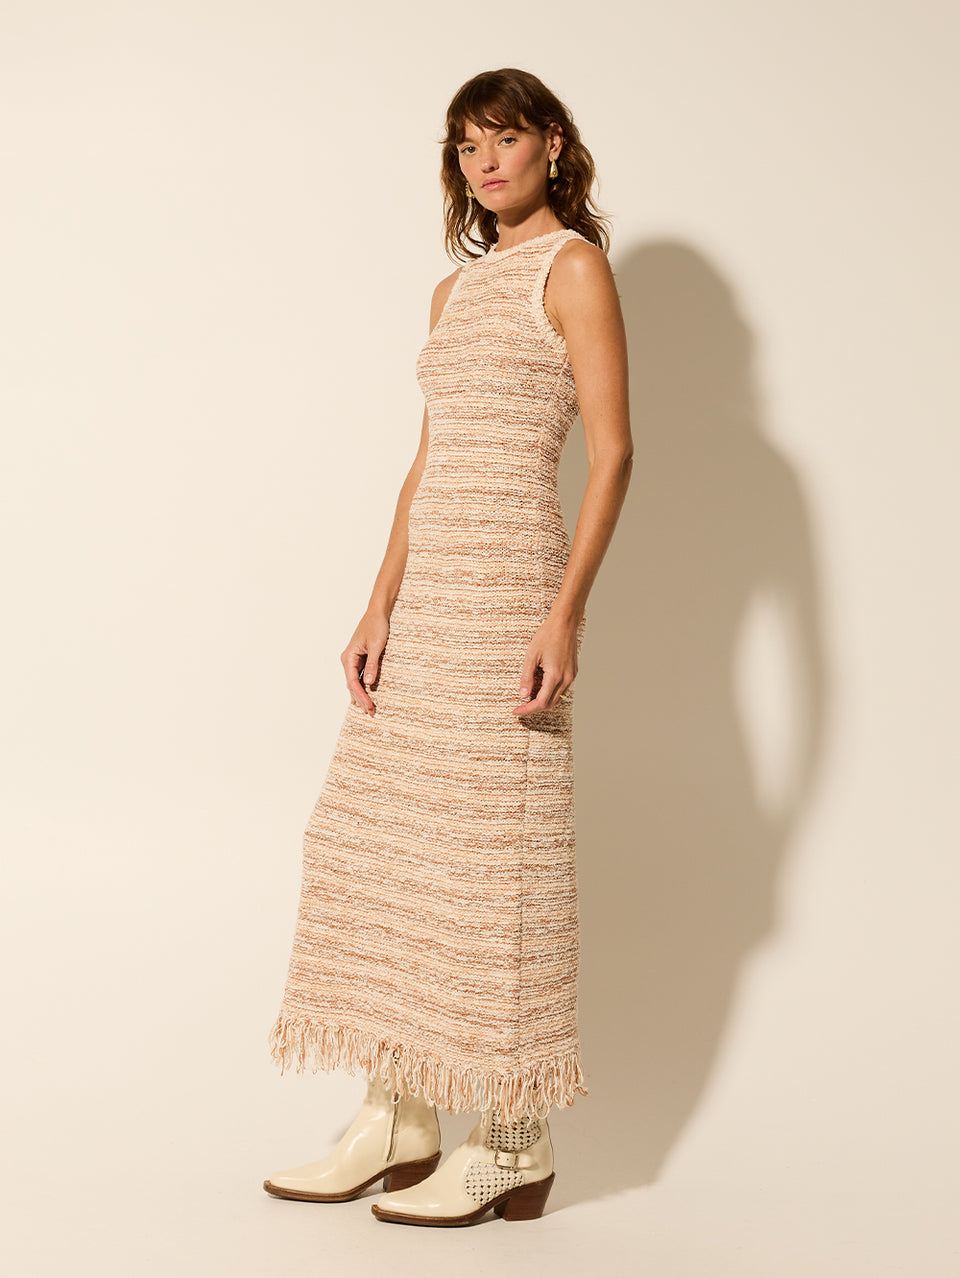 Luciana Knit Dress KIVARI | Model wears knit stripe dress side view